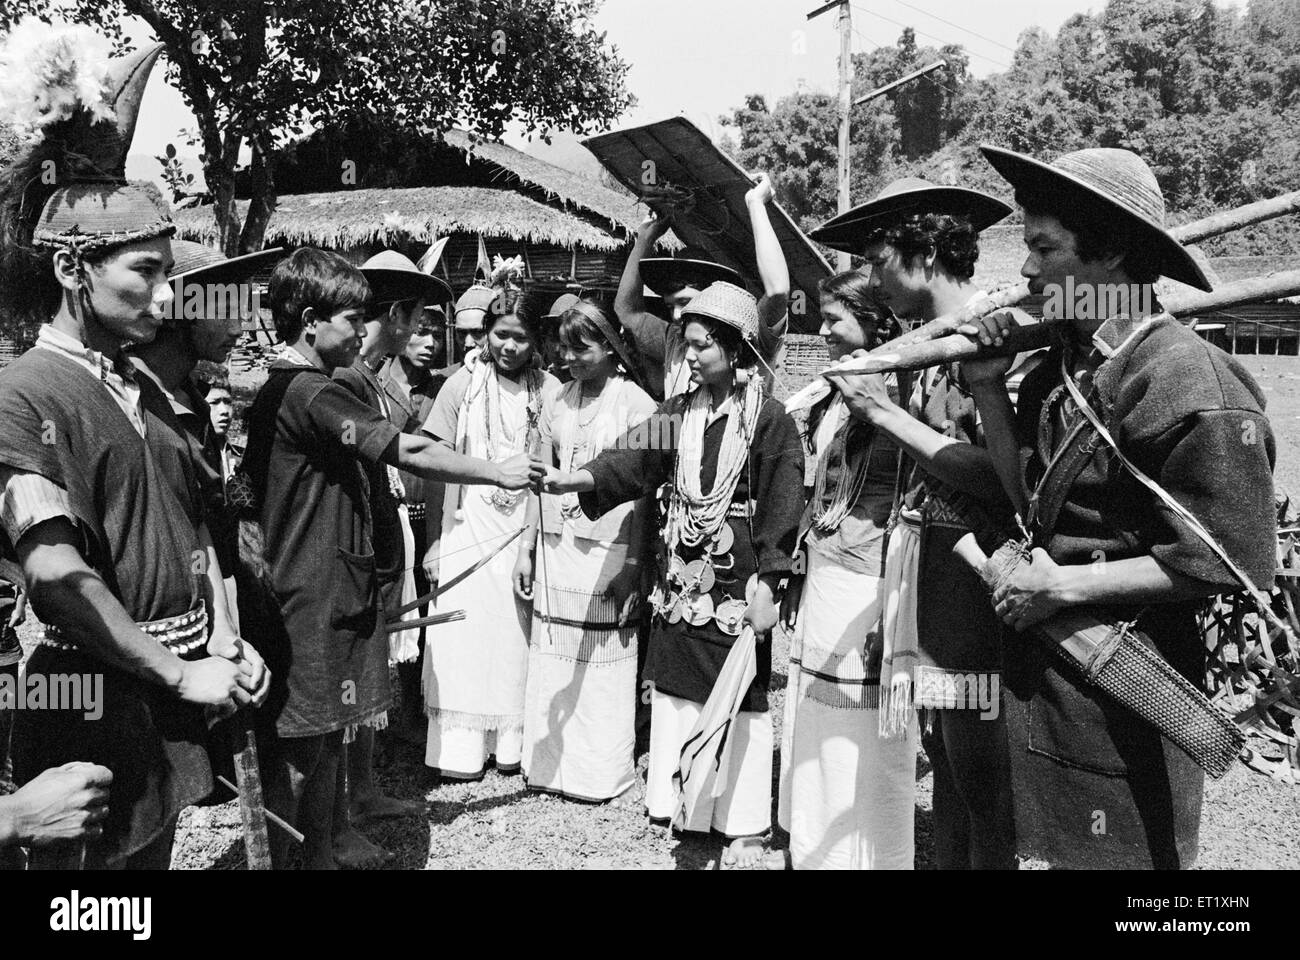 Mariée et le marié échangent un tas de feuilles à leur mariage ; tribu Gelong Arunachal Pradesh ; 1982 ; Inde ; PAS DE MR Banque D'Images